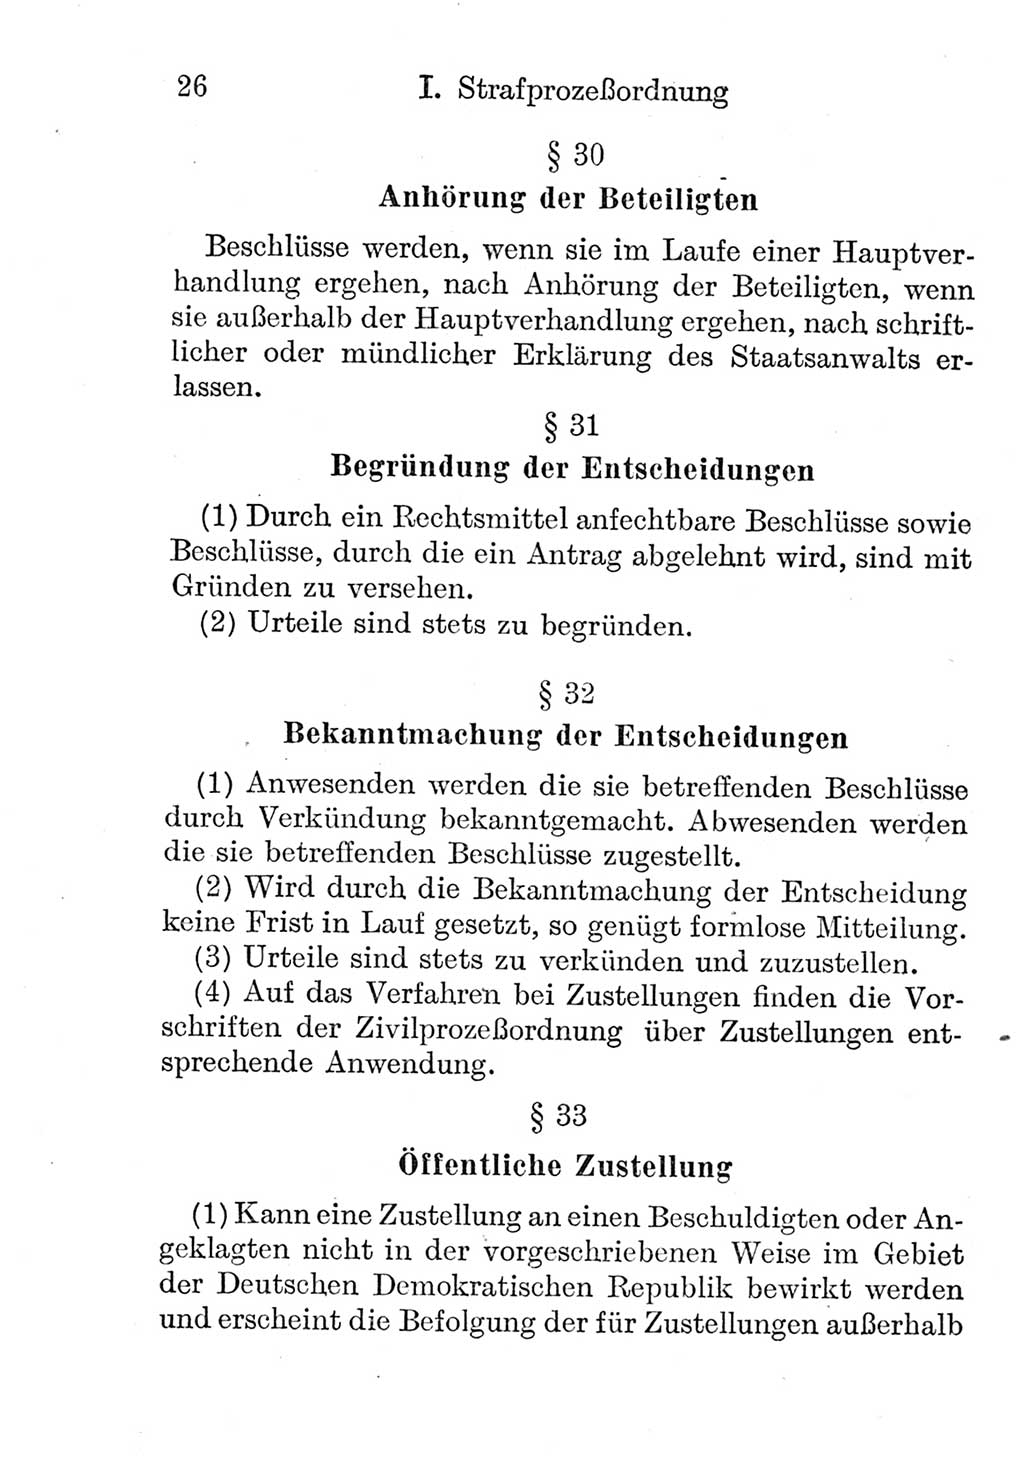 Strafprozeßordnung (StPO), Gerichtsverfassungsgesetz (GVG), Staatsanwaltsgesetz (StAG) und Jugendgerichtsgesetz (JGG) [Deutsche Demokratische Republik (DDR)] 1952, Seite 26 (StPO GVG StAG JGG DDR 1952, S. 26)